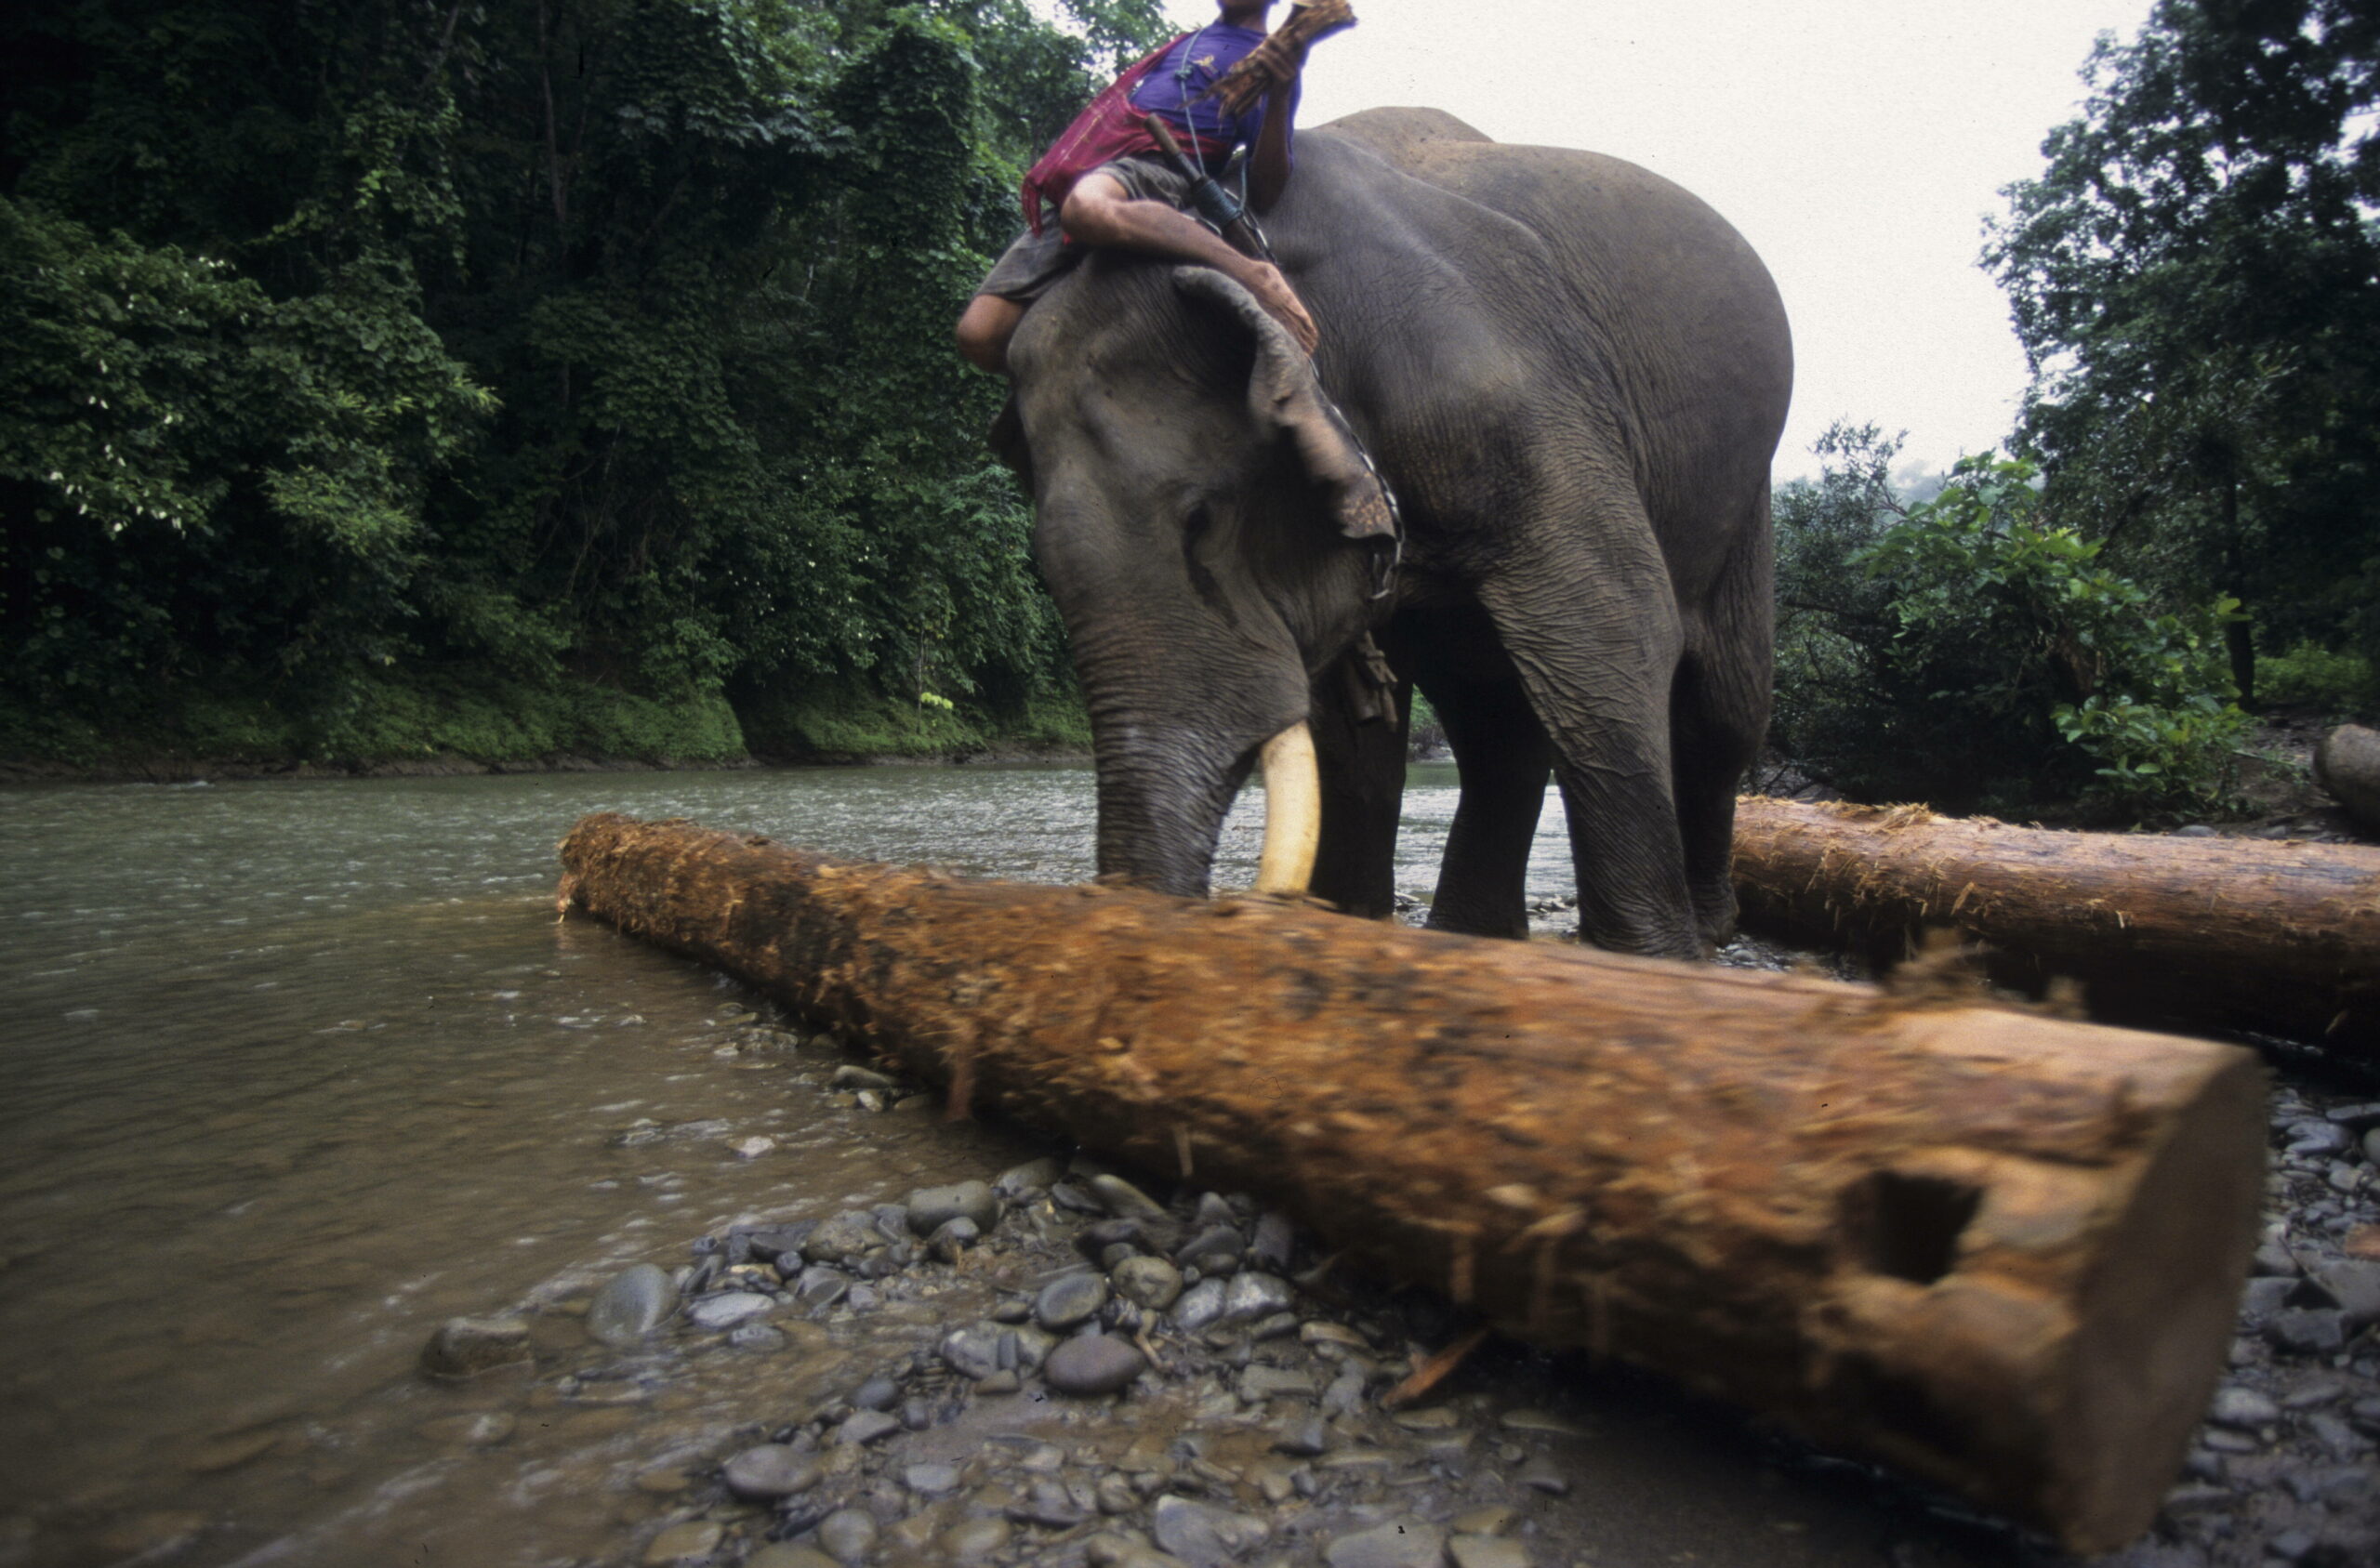 Abholzung von teakholz in Zentral-Myanmar, wo immer noch viele Elefanten dazu benutzt werden.